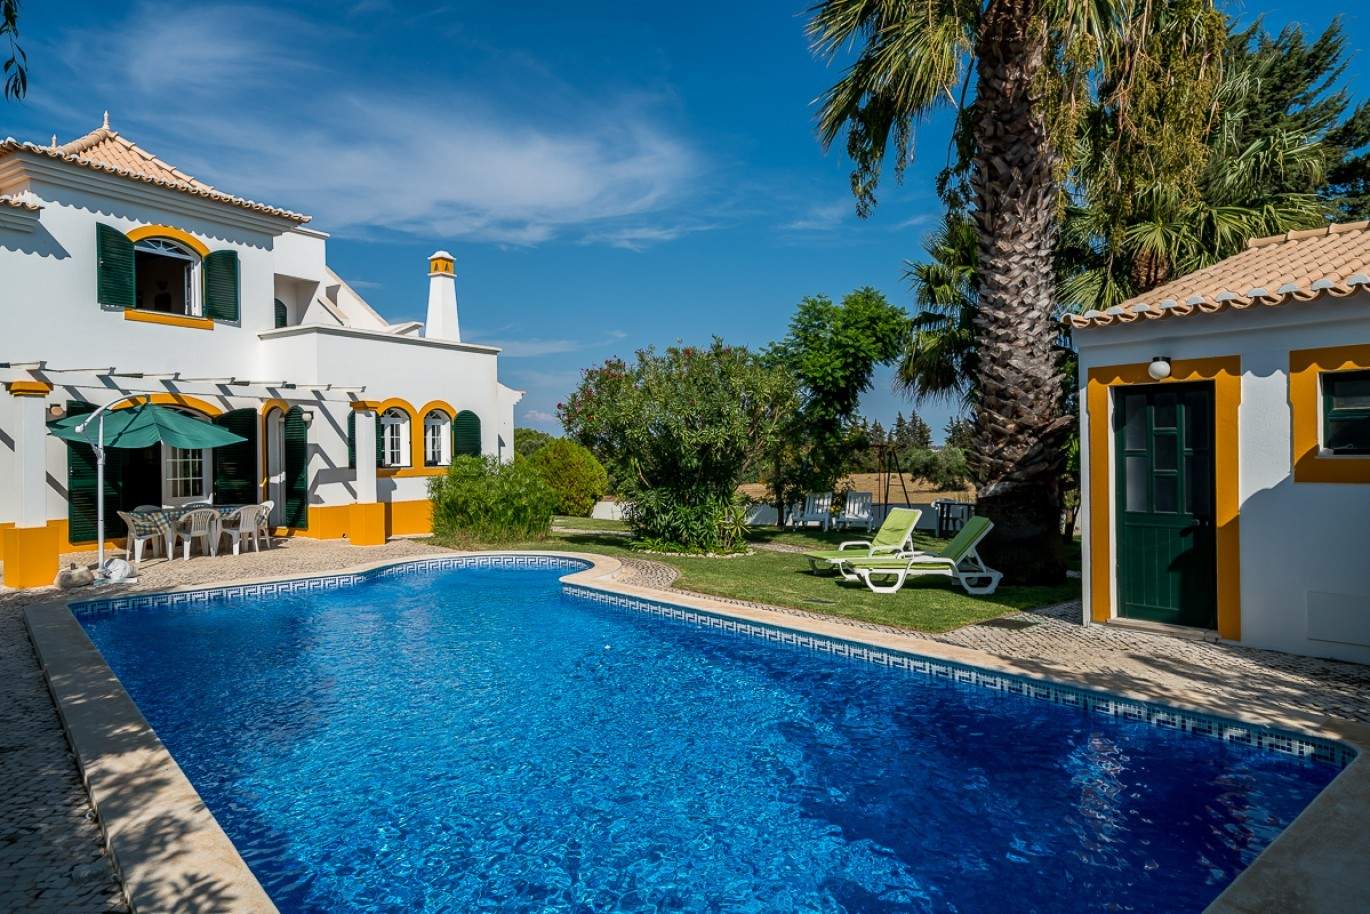 Verkauf Villa in Vila Real de Santo António, Algarve, Portugal_86516